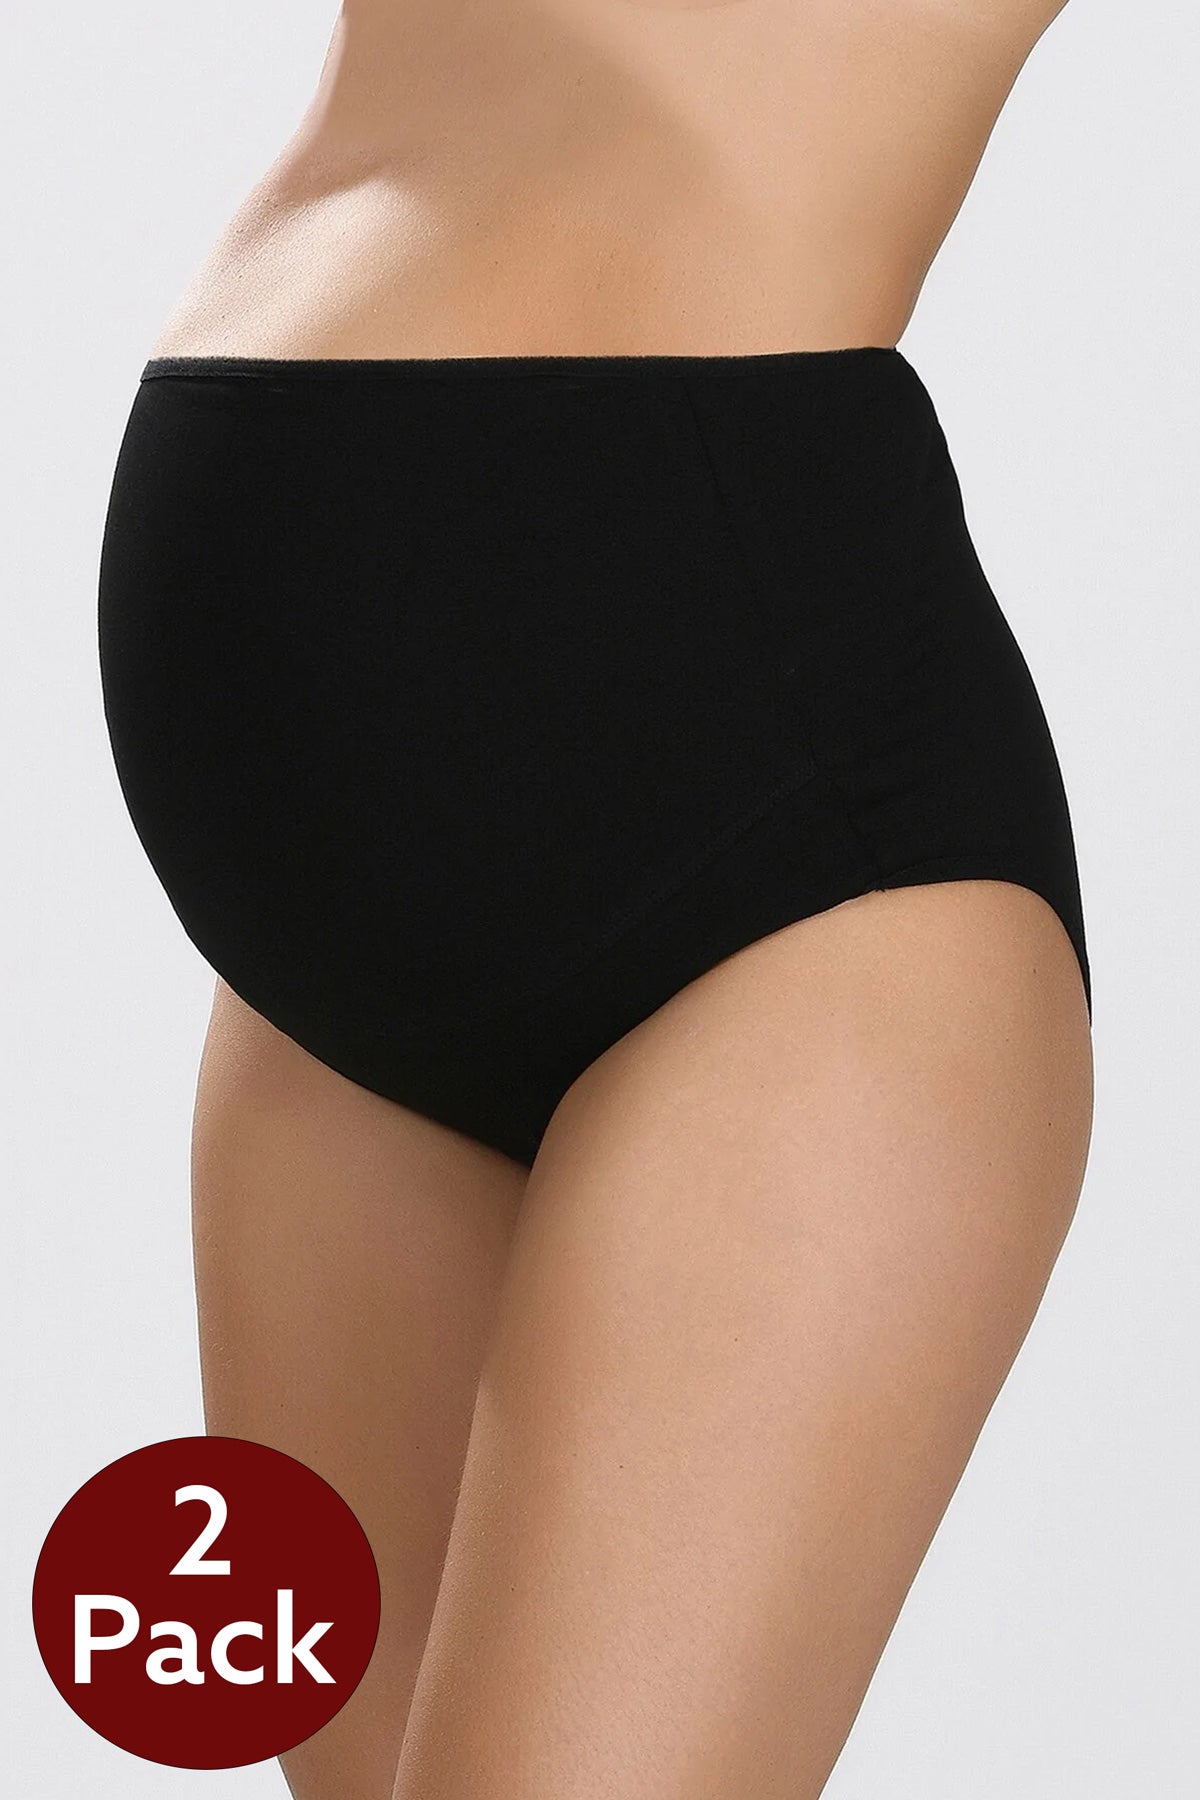 Shopymommy - 2-Pack Lycra Single Jersey Bato Maternity Panties Black 